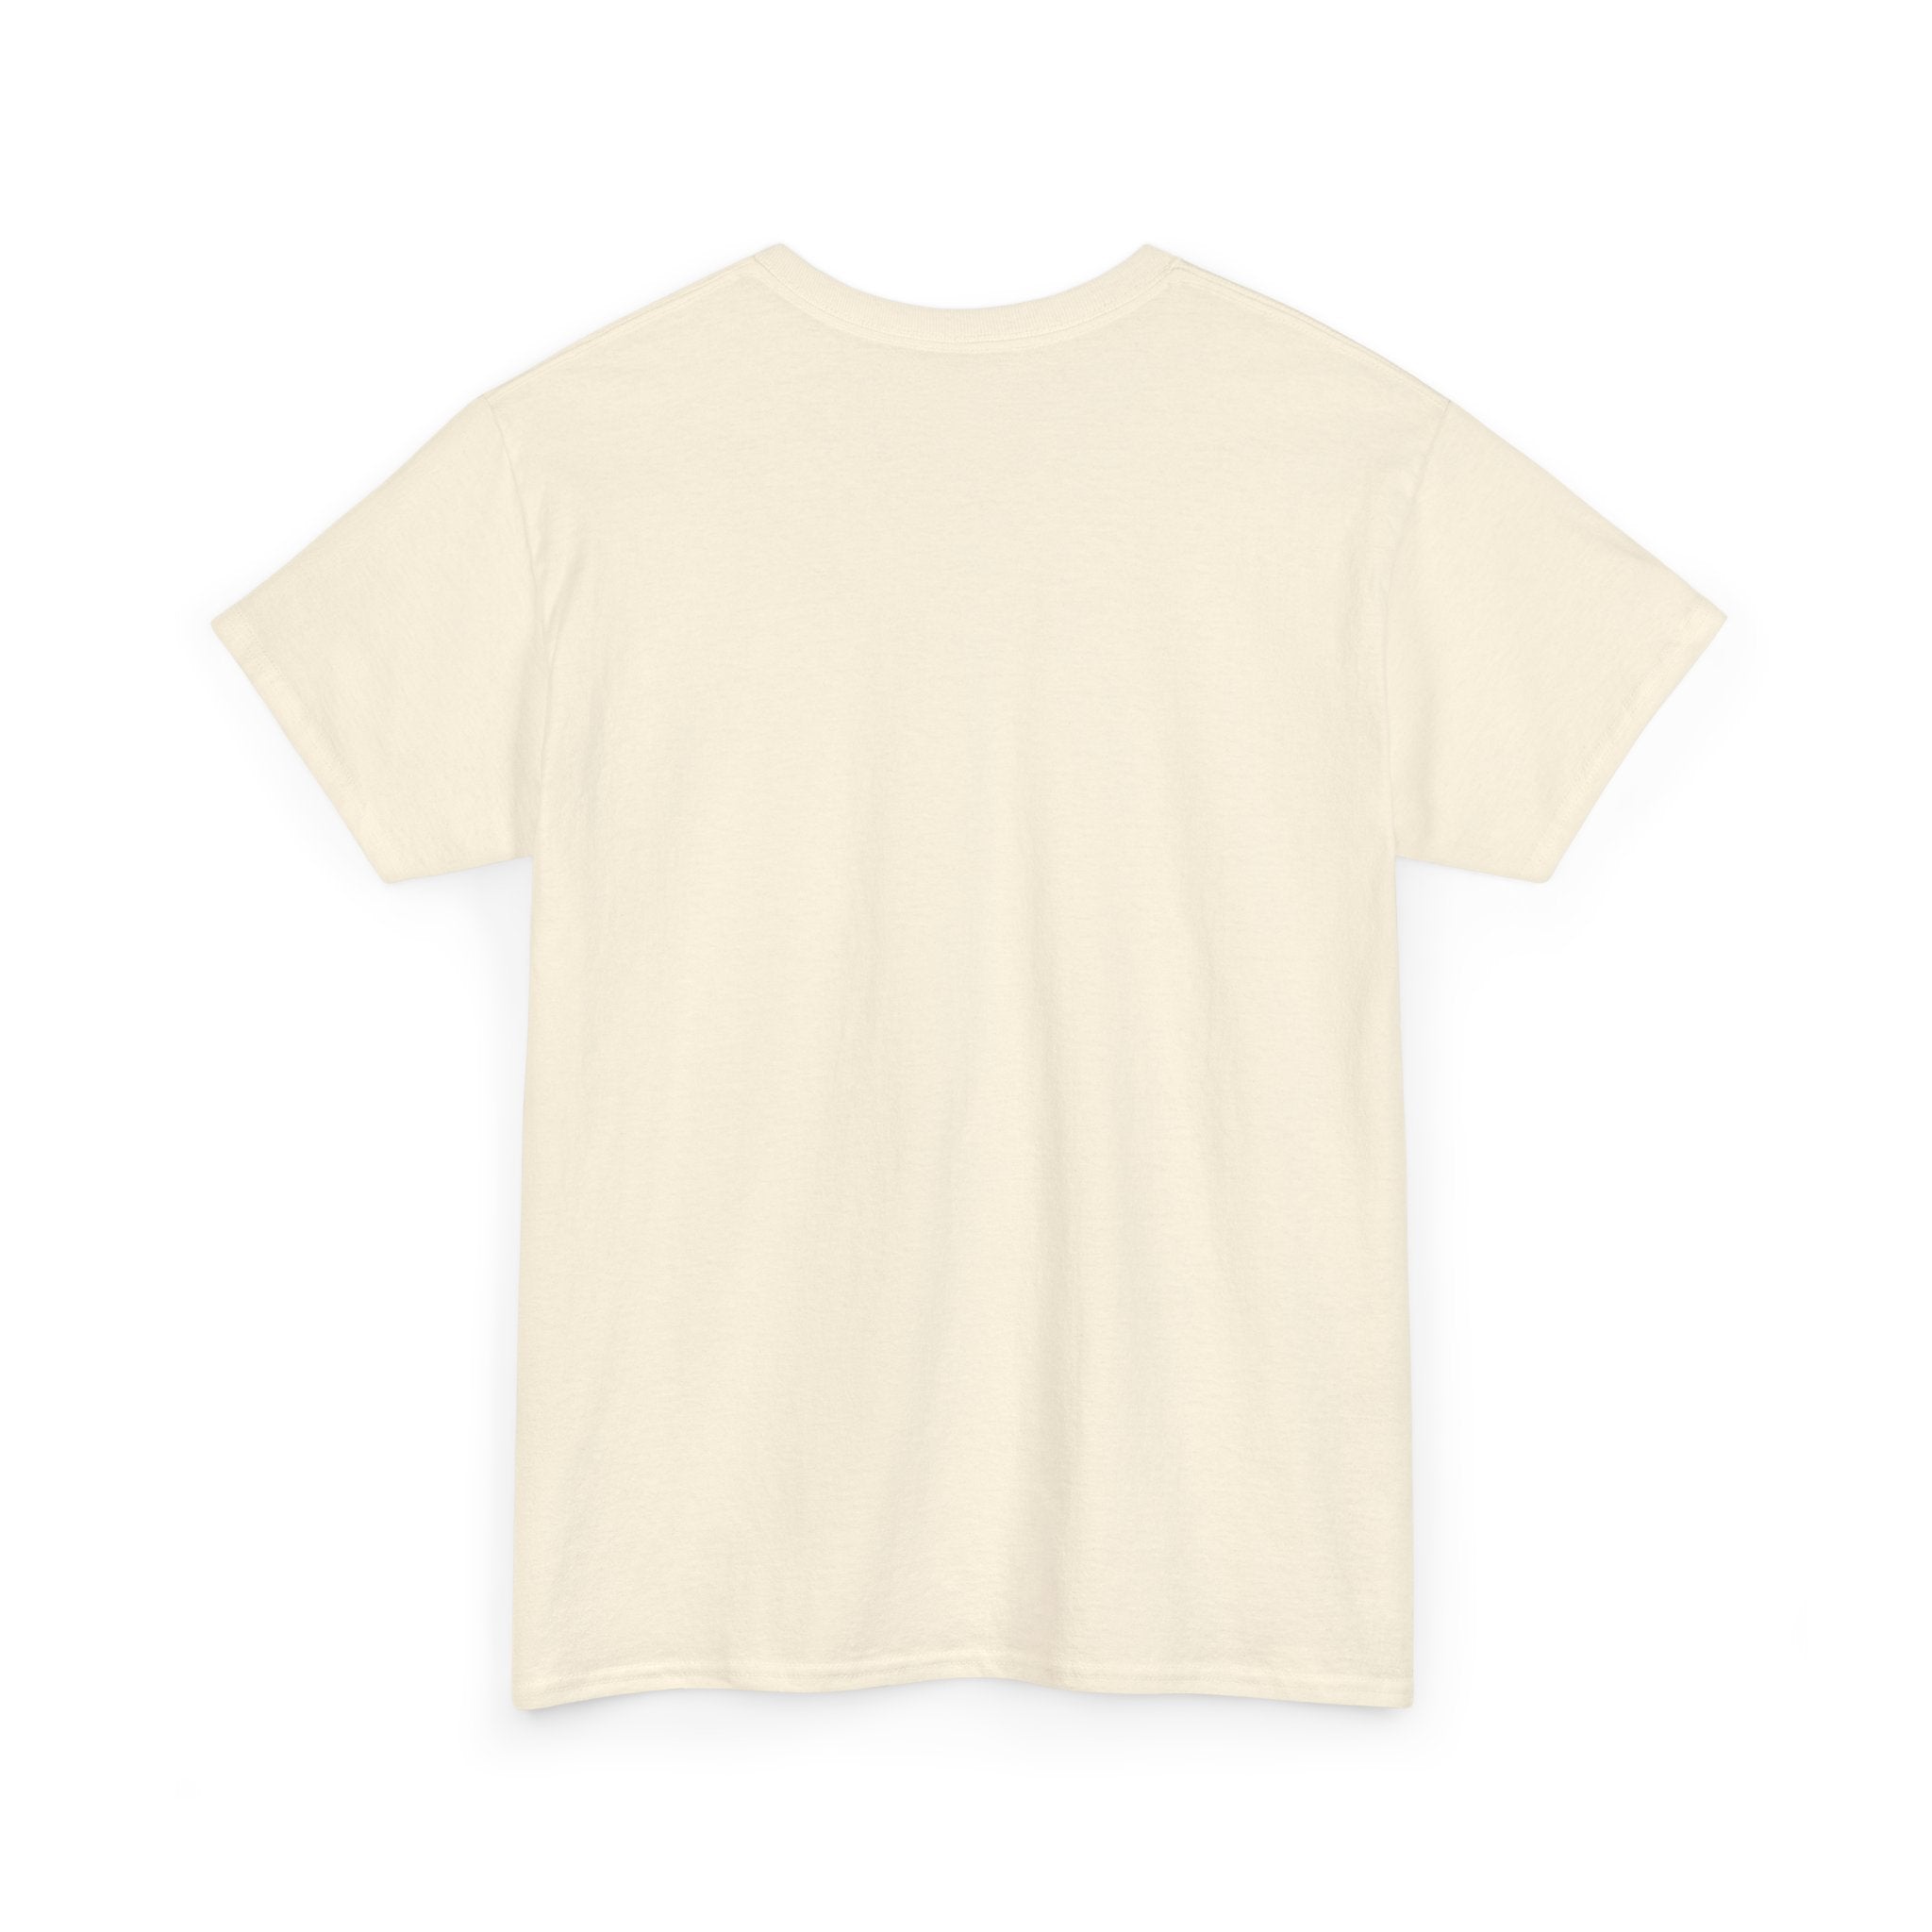 Dennis Rodman T-shirt